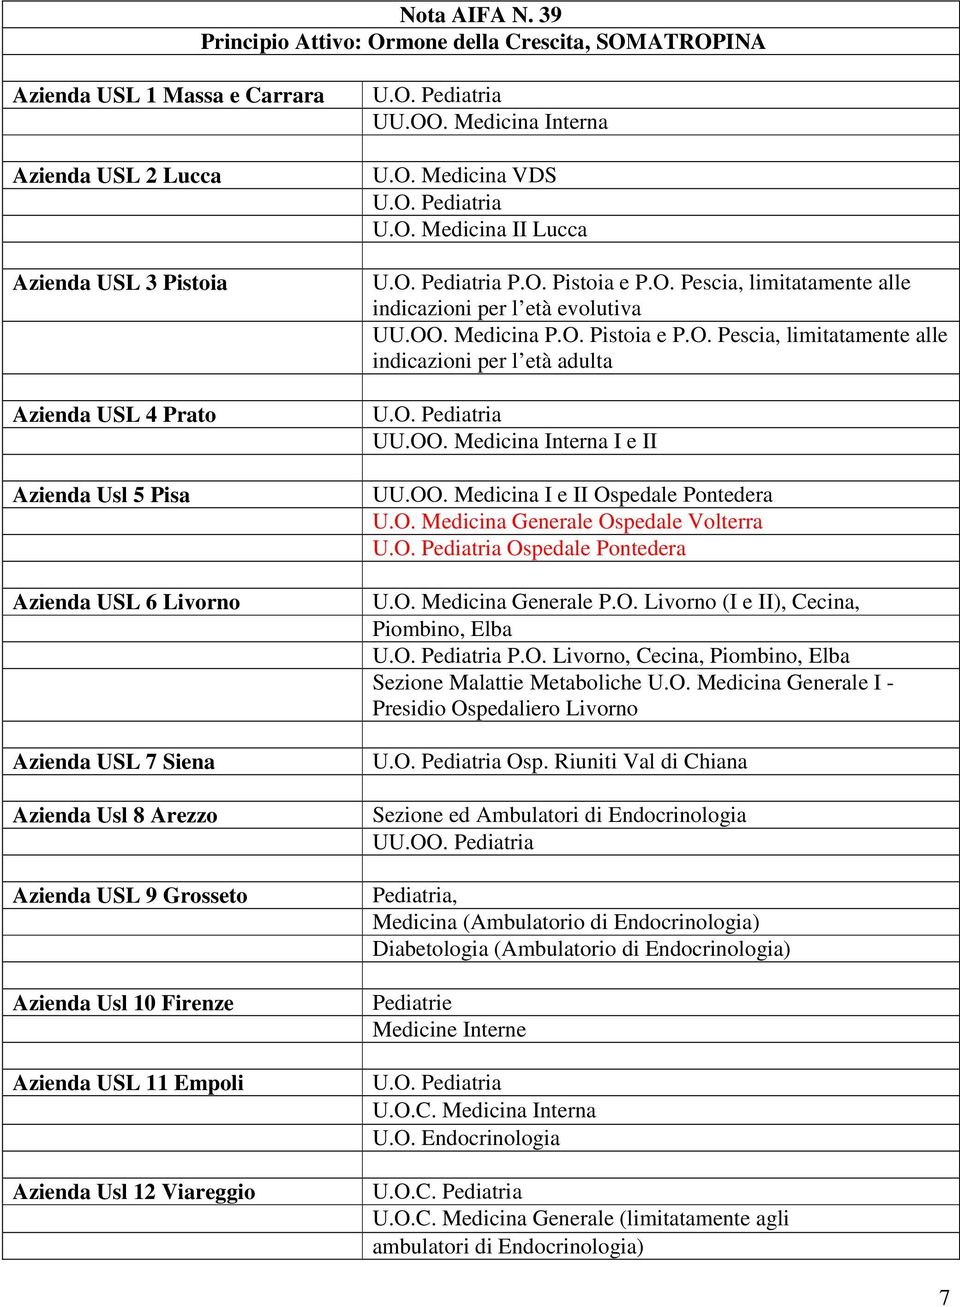 Usl 8 Arezzo Azienda USL 9 Grosseto Azienda Usl 10 Firenze Azienda Usl 12 Viareggio UU.OO. Medicina Interna U.O. Medicina VDS U.O. Medicina II Lucca P.O. Pistoia e P.O. Pescia, limitatamente alle indicazioni per l età evolutiva UU.